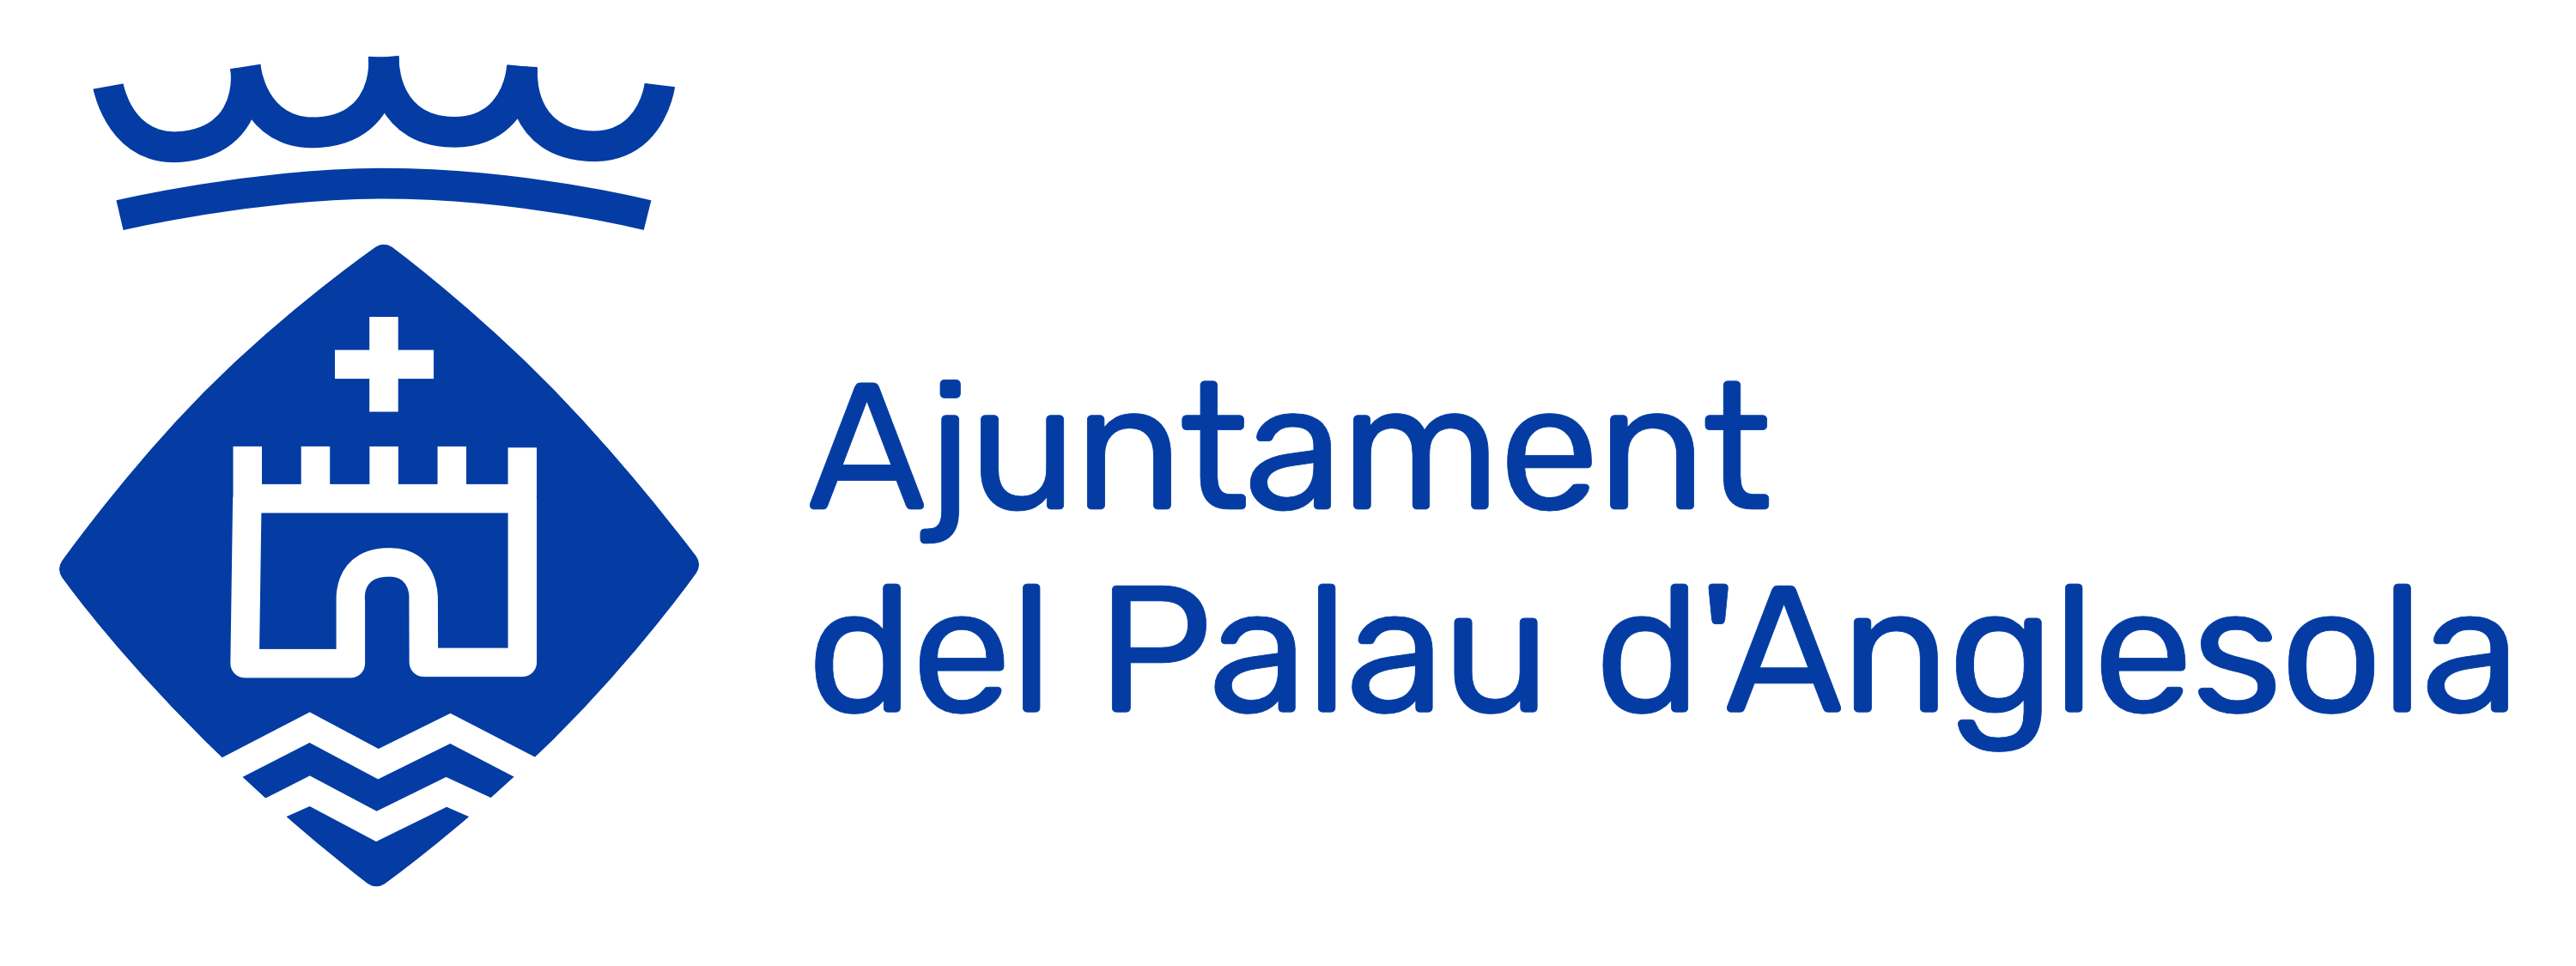 Ajuntament del Palau d'Anglesola